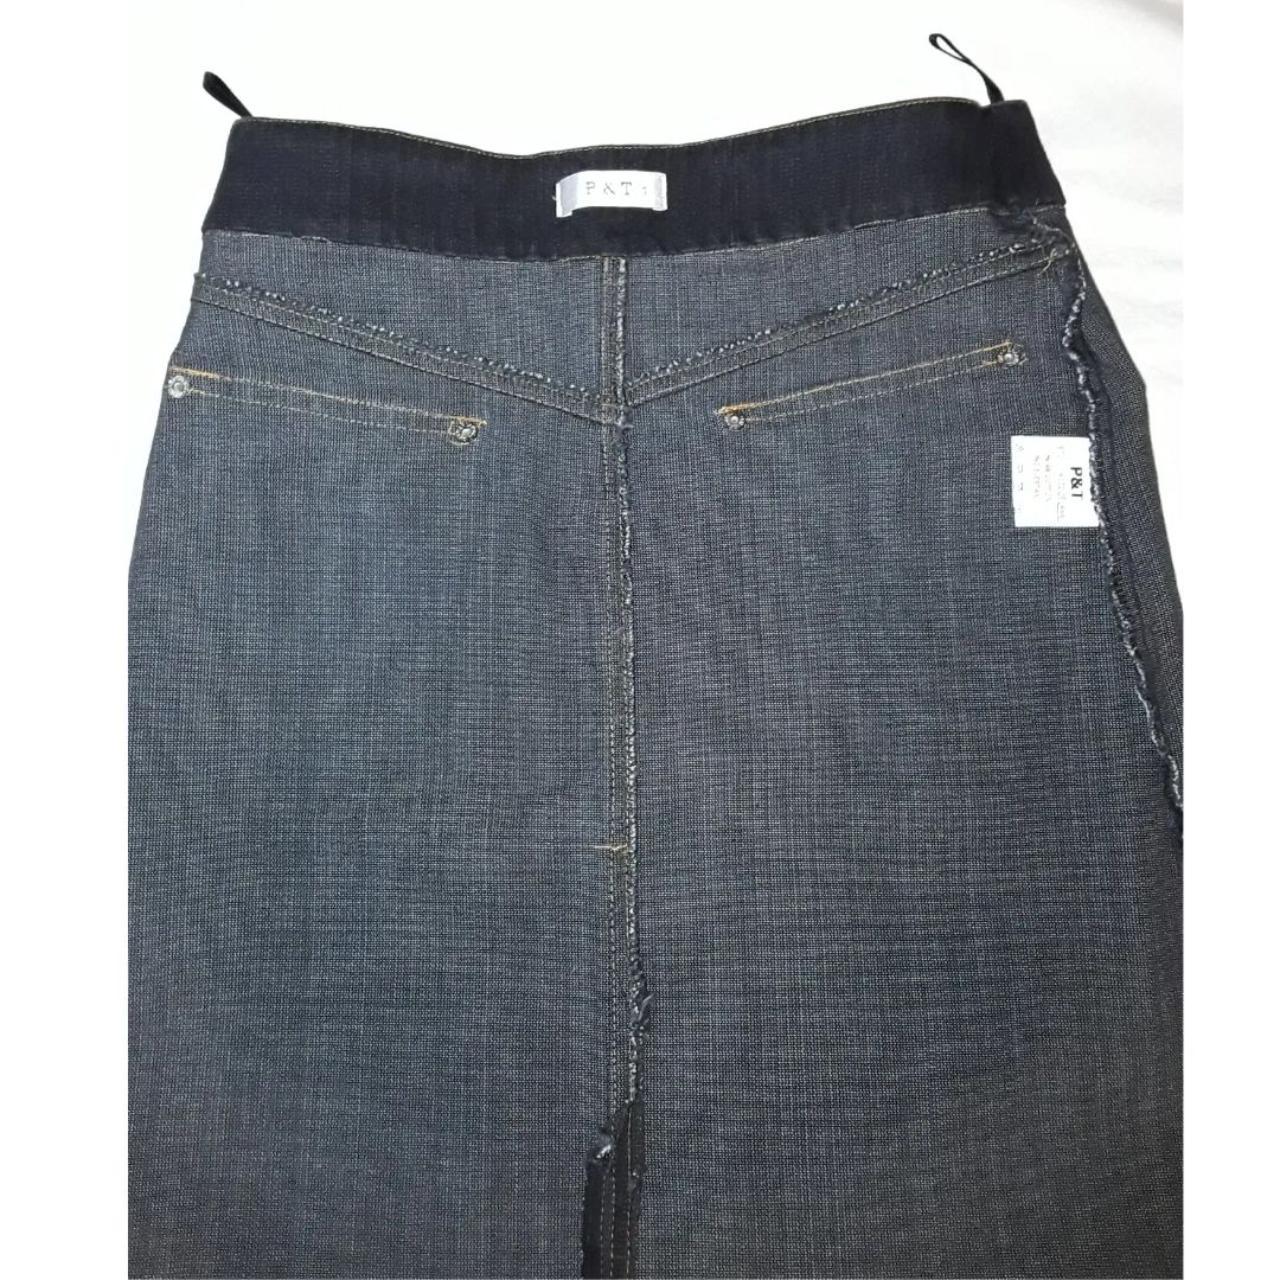 Vintage y2k jean skirt waist 37 cm 14.6